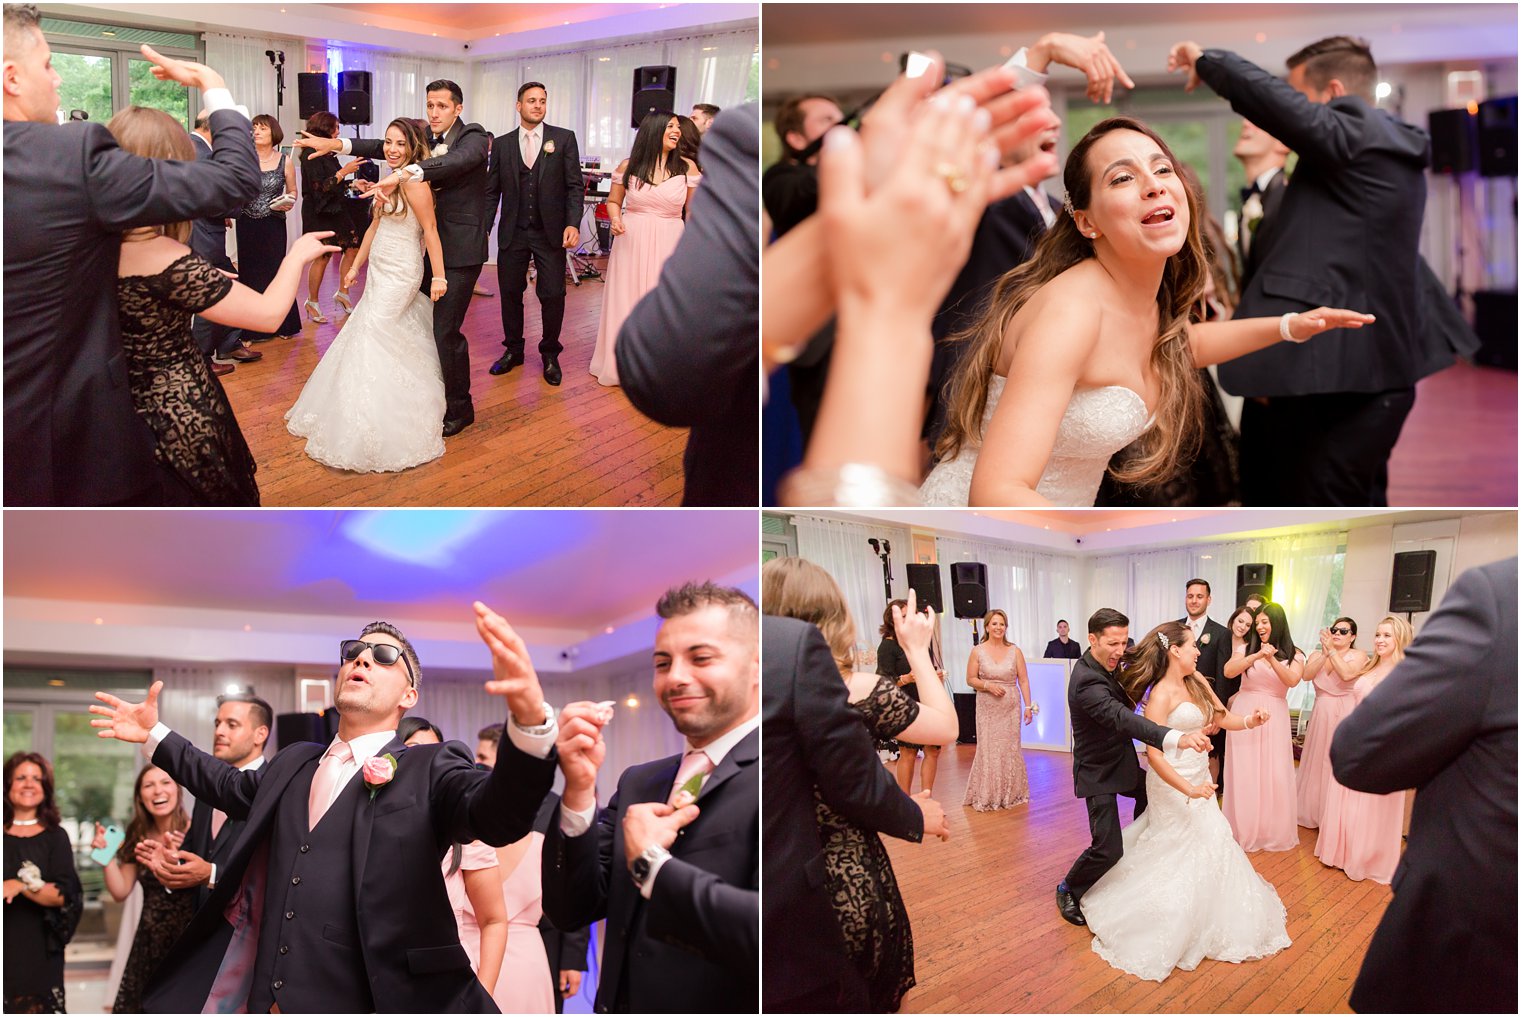 Dancing at NYC wedding | Photos by Idalia Photography